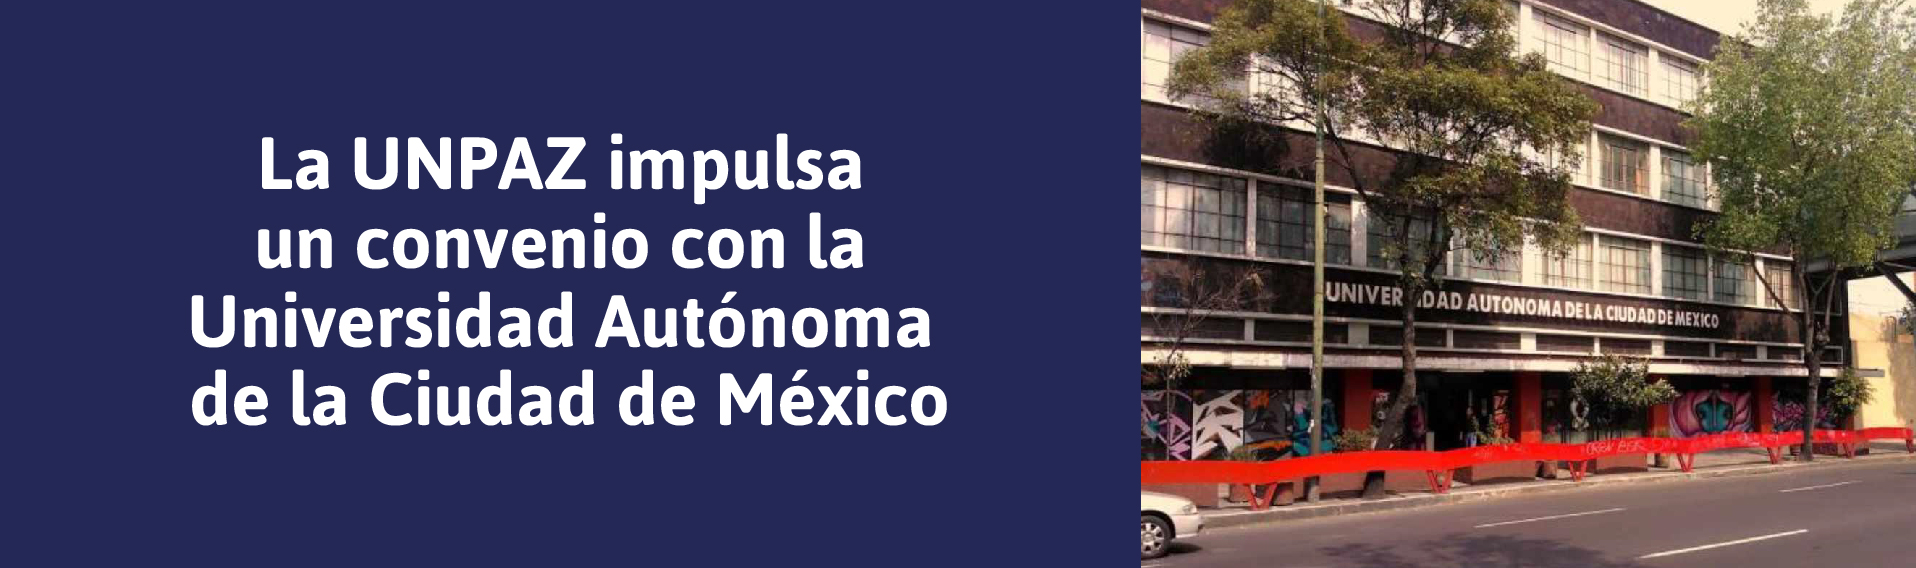 La UNPAZ impulsa un convenio con la Universidad Autónoma de la Ciudad de México - UNPAZ